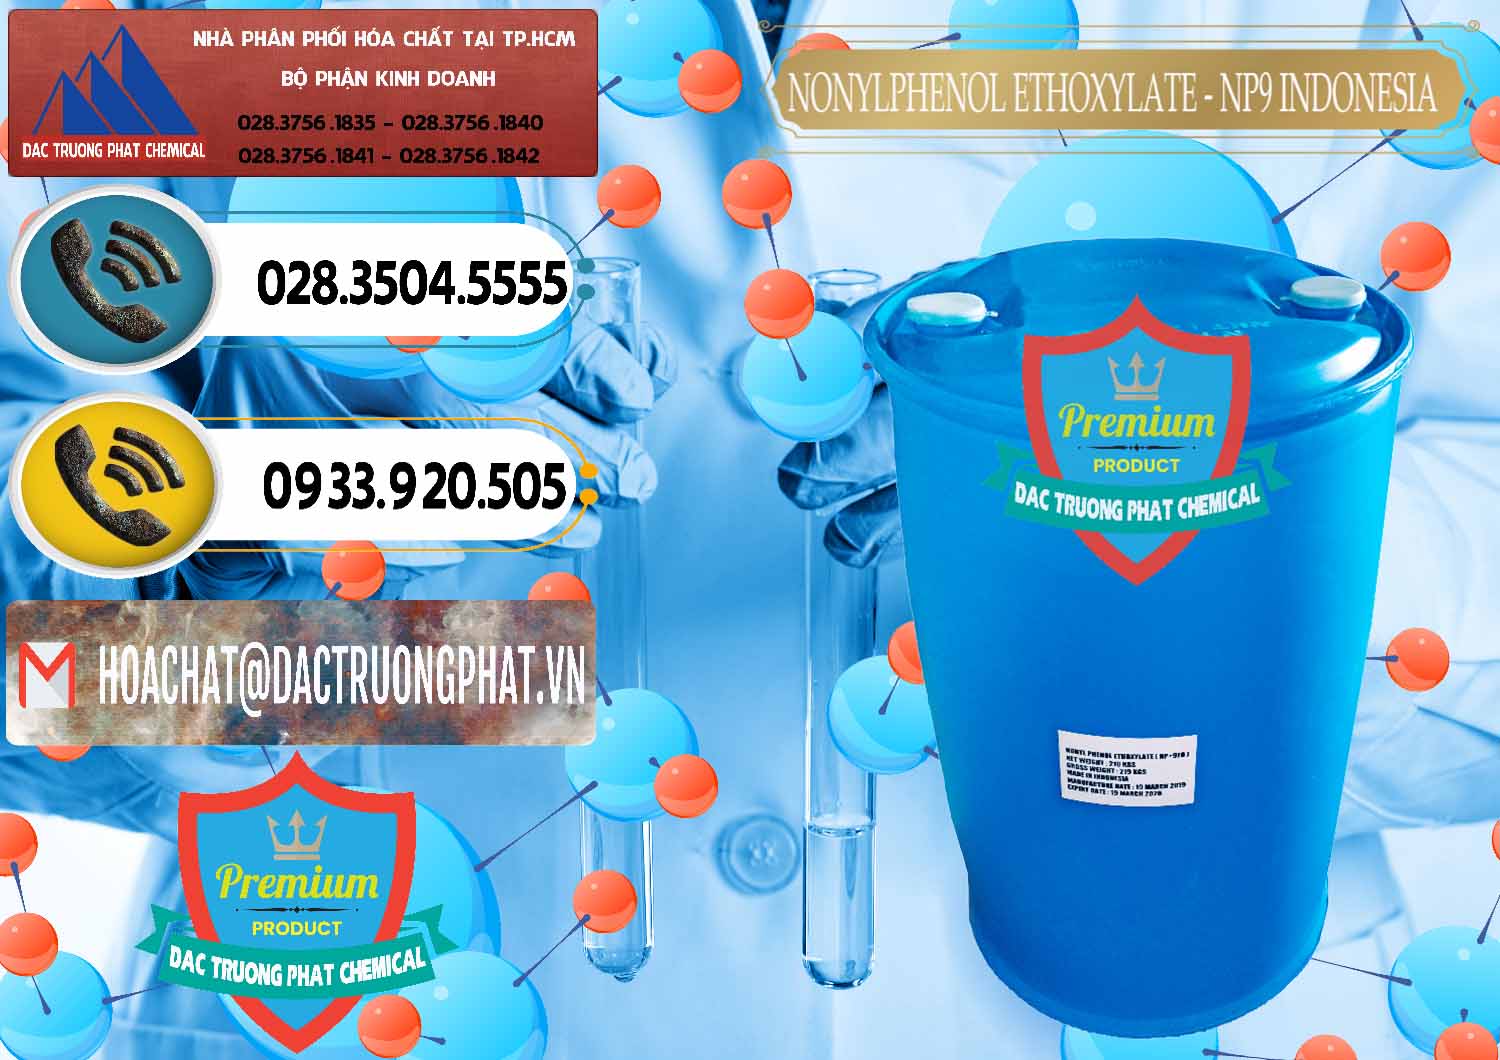 Nơi chuyên bán _ cung ứng NP9 - Nonyl Phenol Ethoxylate Indonesia - 0317 - Bán - cung cấp hóa chất tại TP.HCM - hoachatdetnhuom.vn